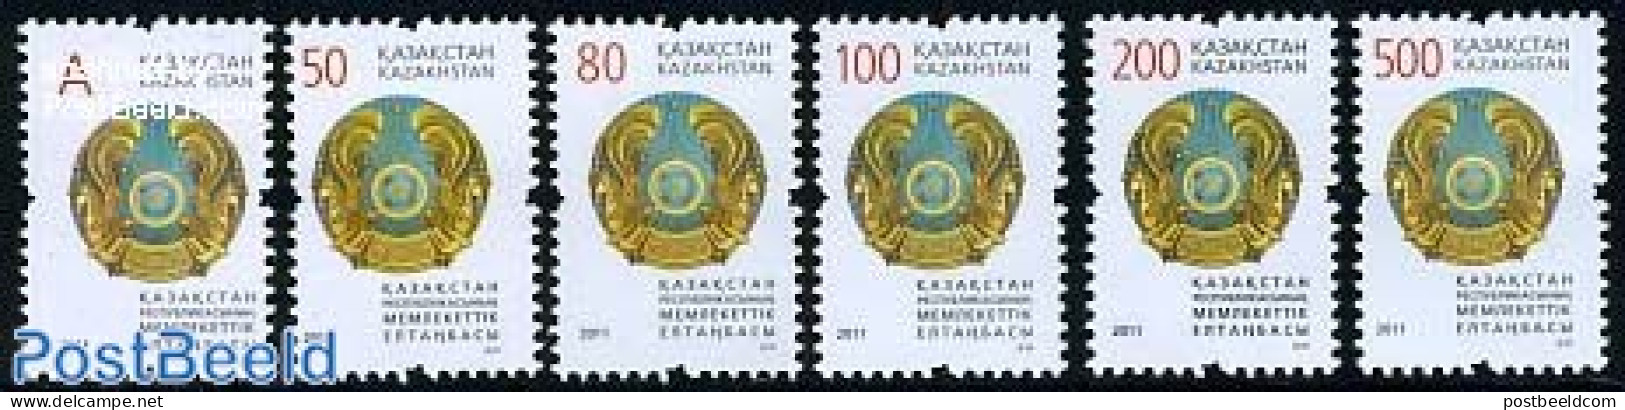 Kazakhstan 2011 Definitives, Coat Of Arms 6v, Mint NH, History - Coat Of Arms - Kazakhstan